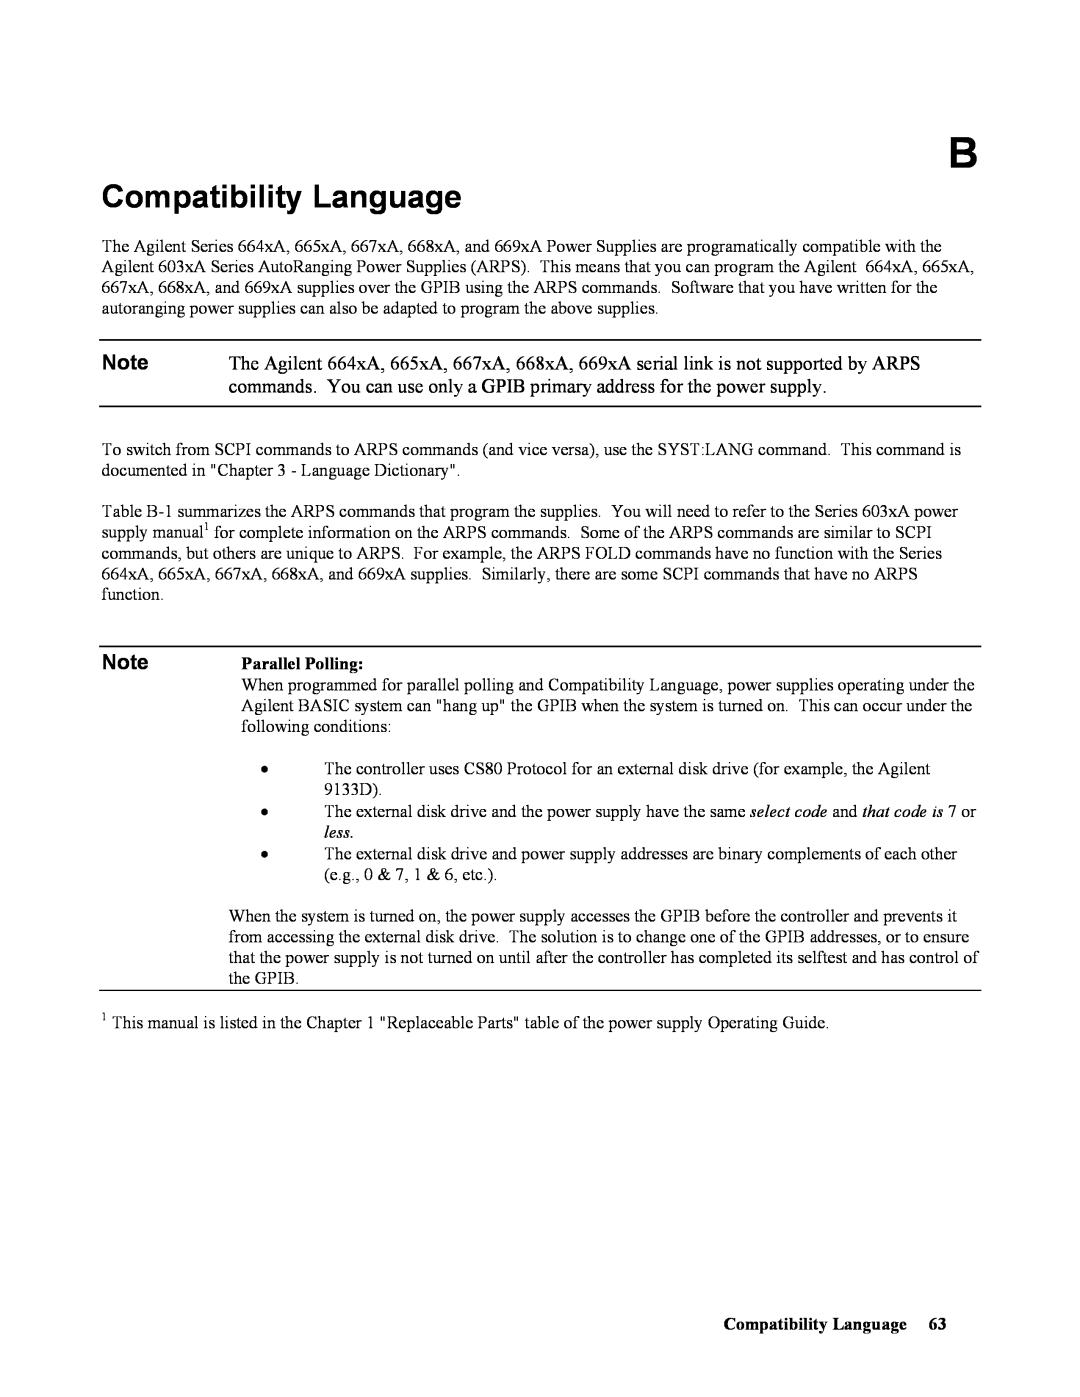 Agilent Technologies 669xA, 665xA, 664xA, 667xA, 668xA manual Compatibility Language 